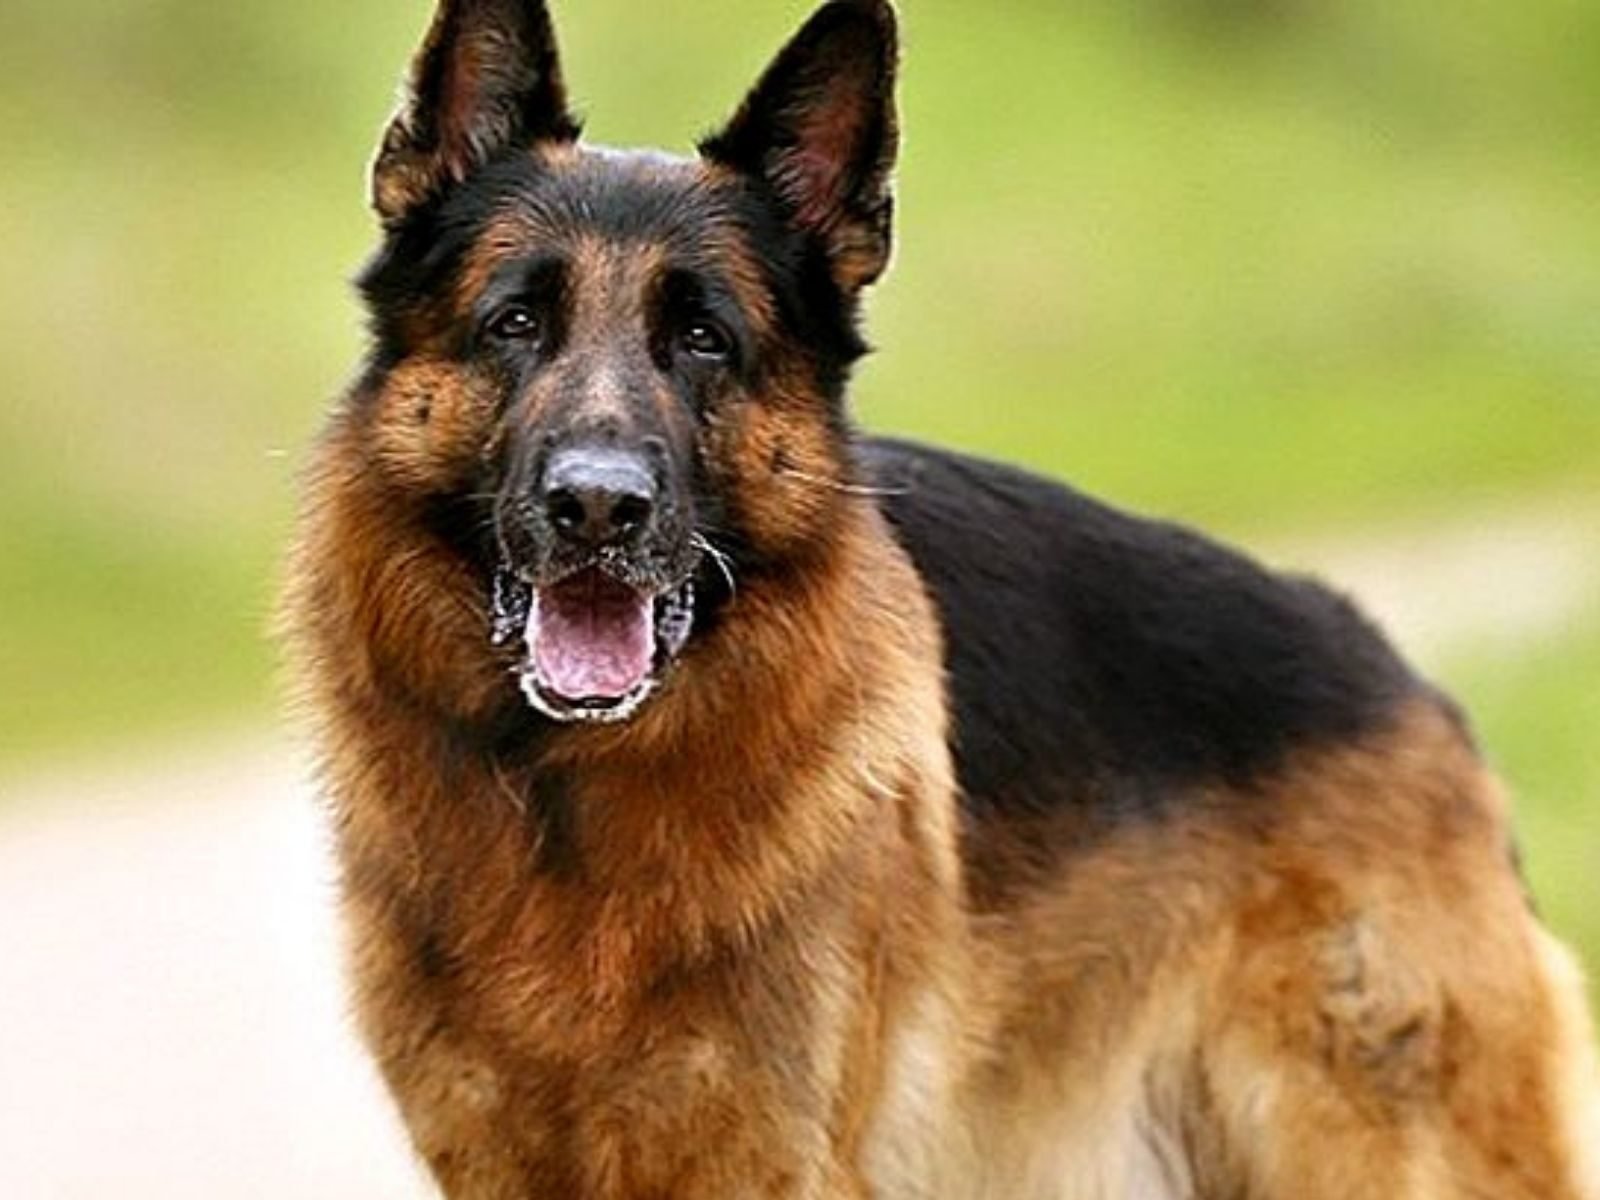 अजब-गजब: पसंद आया जर्मन शेफर्ड कुत्ता, मना किया तो पिस्तौल की नोक पर कर लिया कुत्ता मालिक का अपहरण